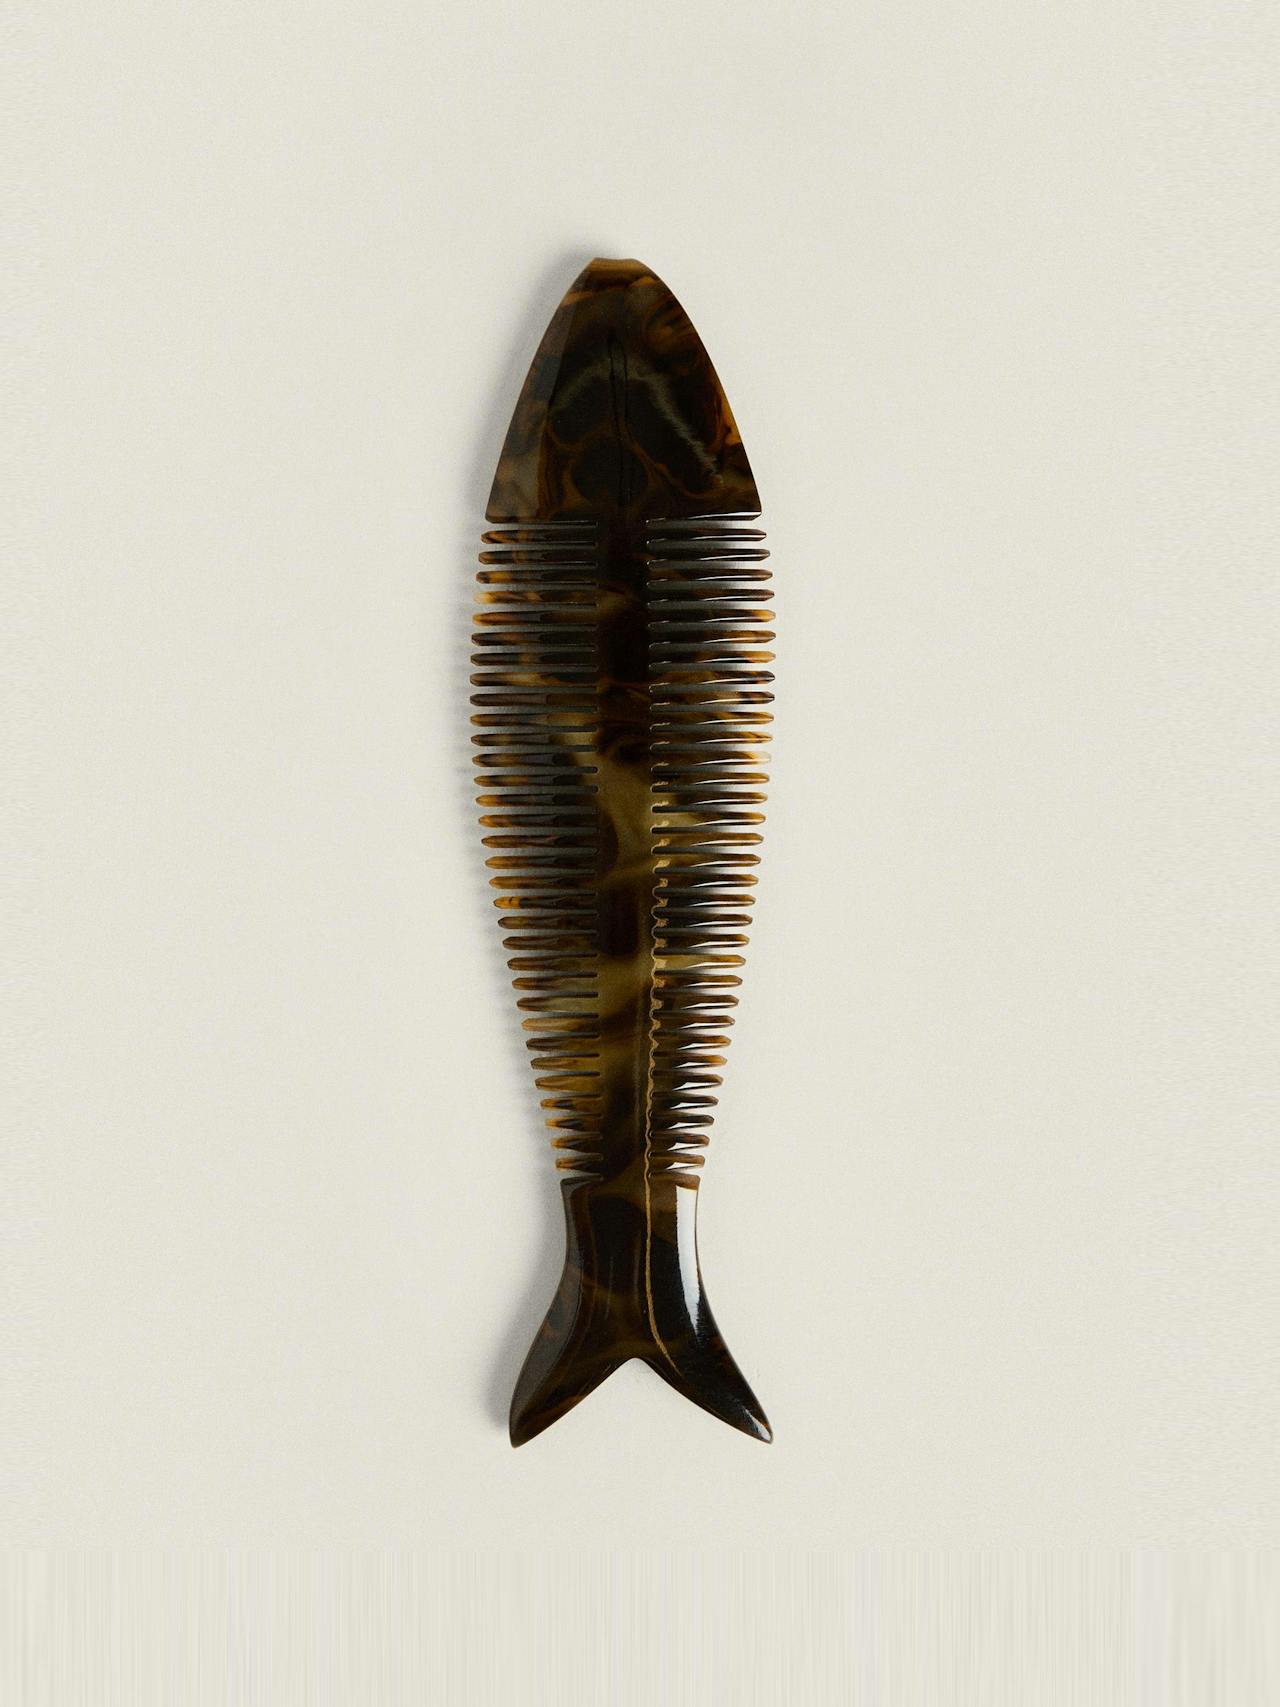 Fish comb